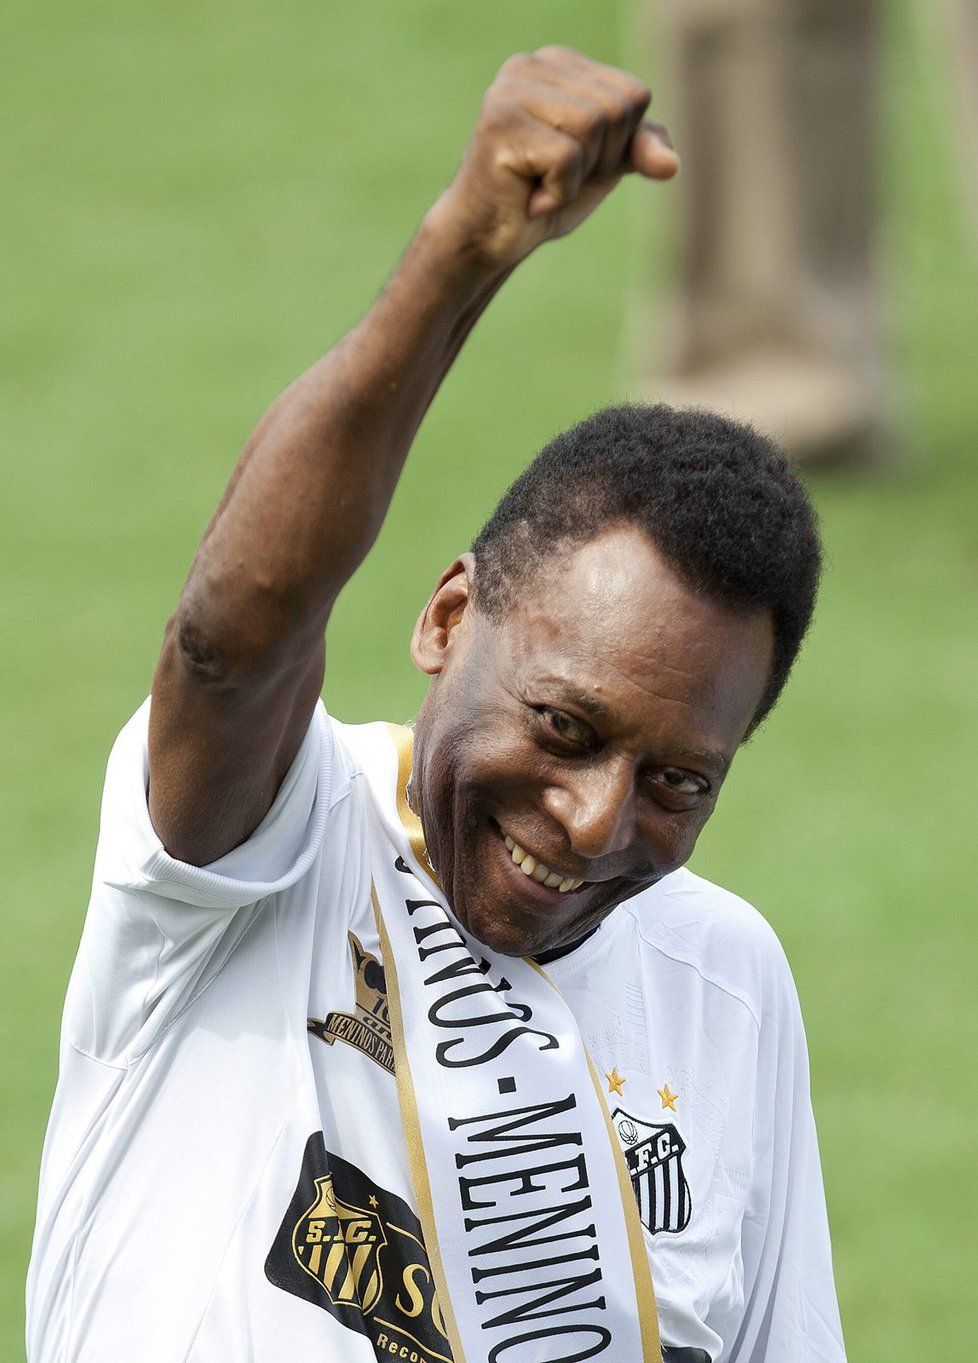 Fotbalový král minulého století Pelé se sice před fotografy usmíval, ale jinak trpěl velkmými bolestmi. Proto se podrobil operačnímu zákroku